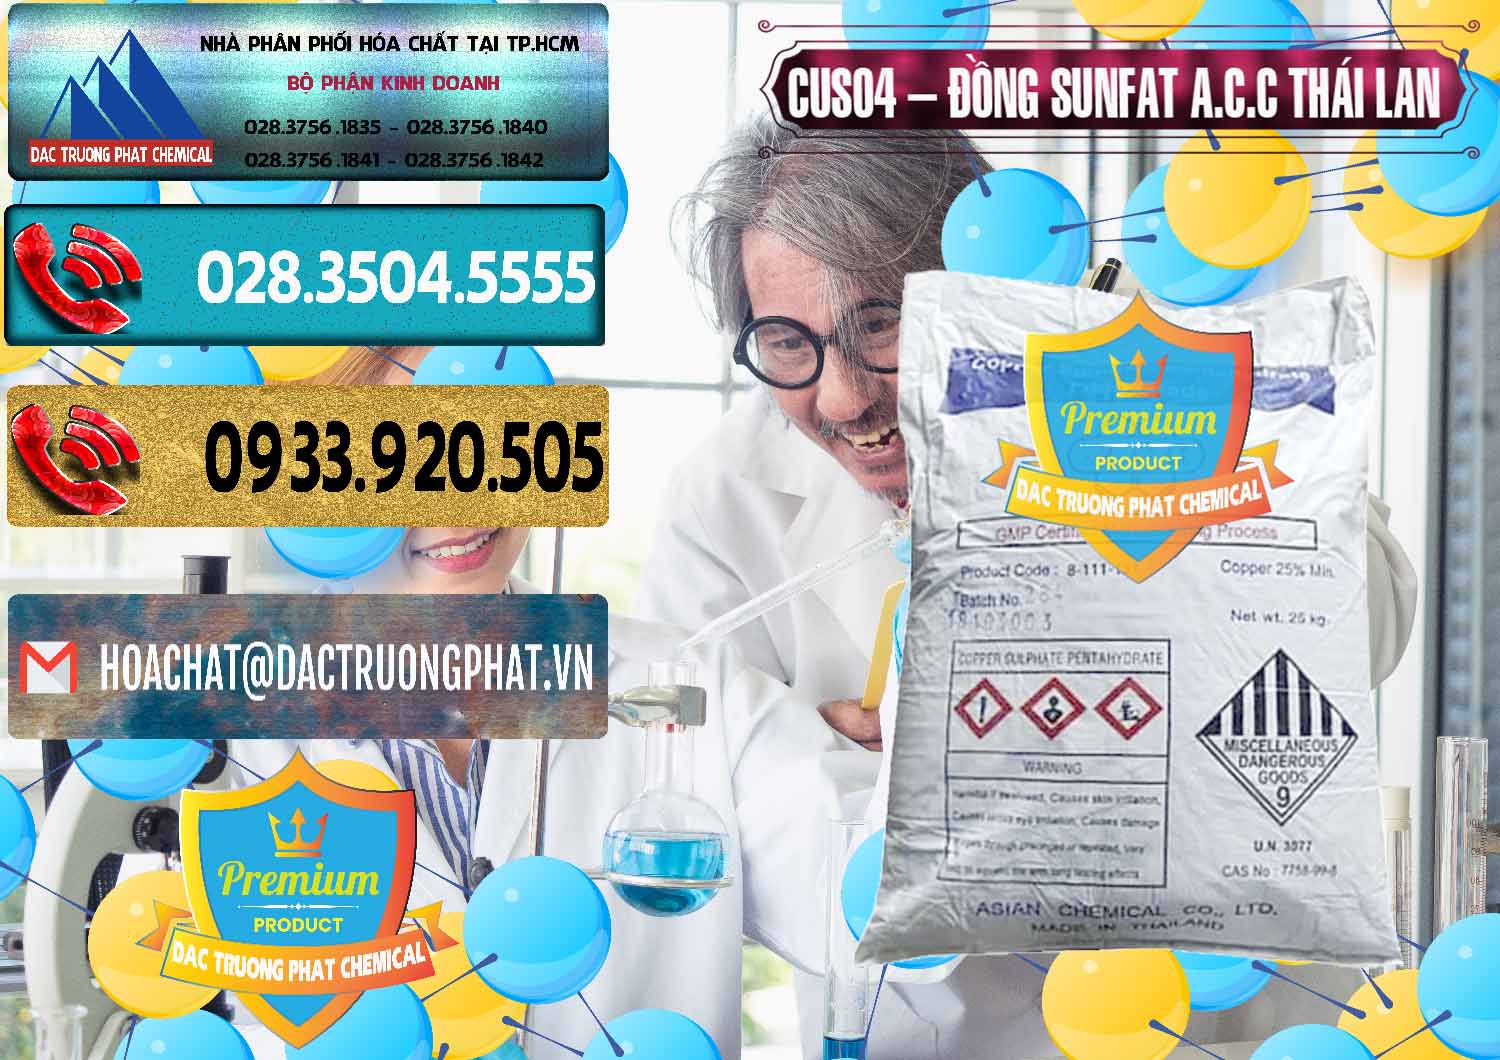 Nơi chuyên phân phối _ bán CuSO4 – Đồng Sunfat A.C.C Thái Lan - 0249 - Nơi cung cấp ( phân phối ) hóa chất tại TP.HCM - hoachatdetnhuom.com